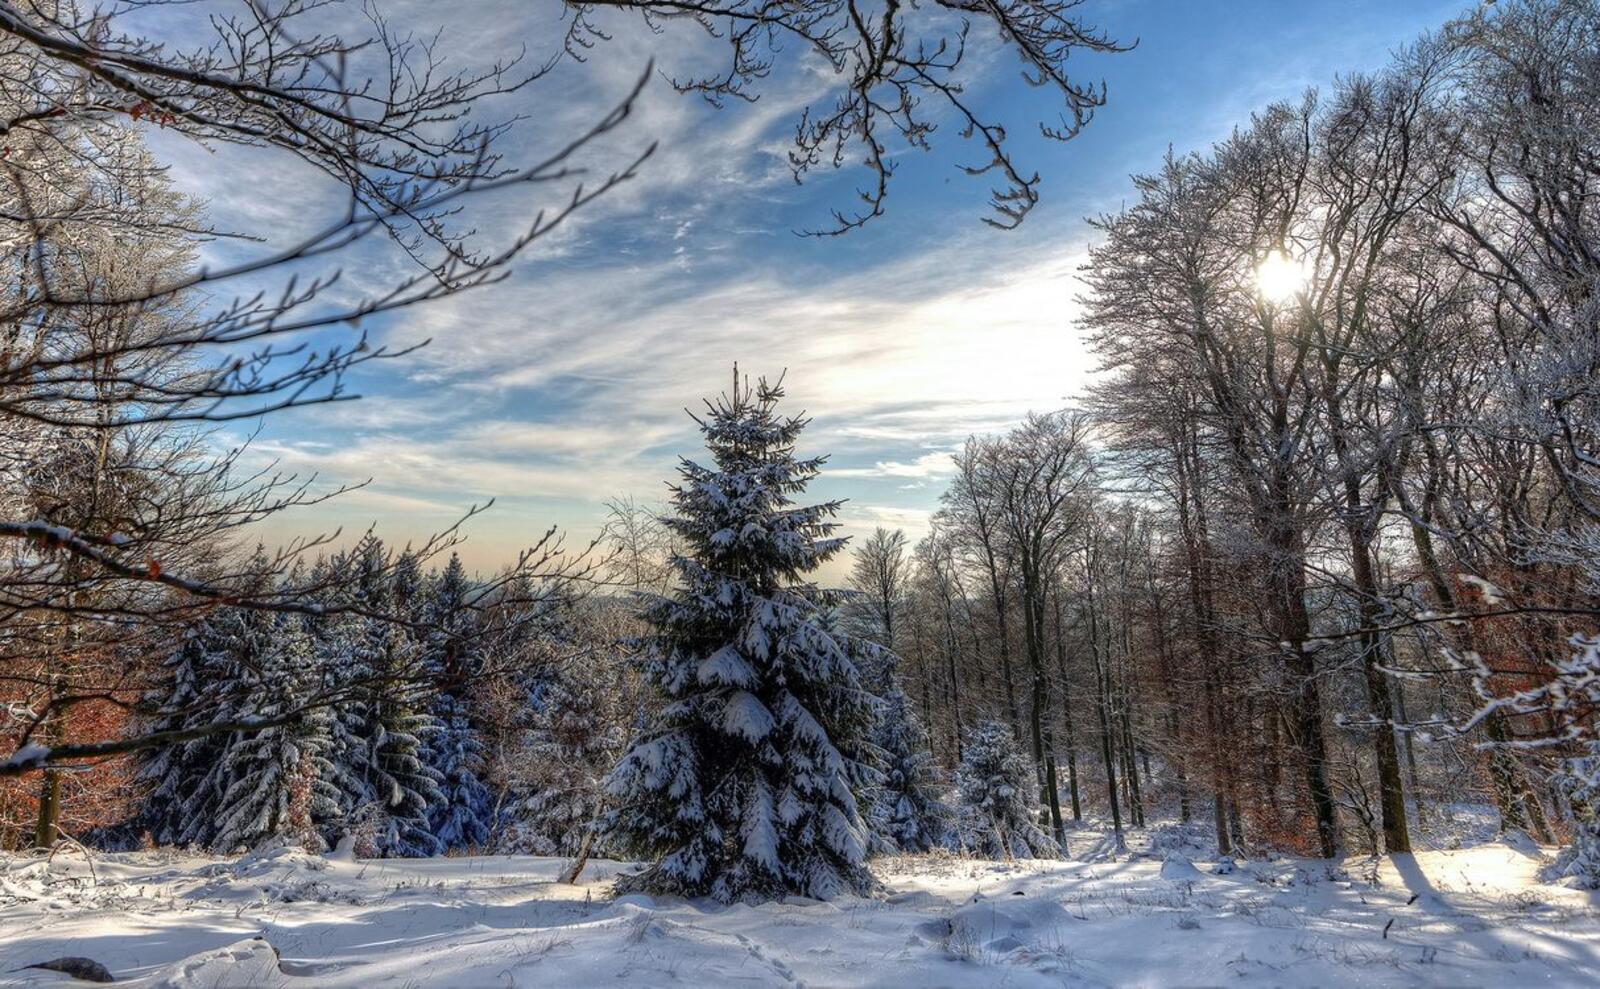 Обои пейзажи день снег на деревьях на рабочий стол